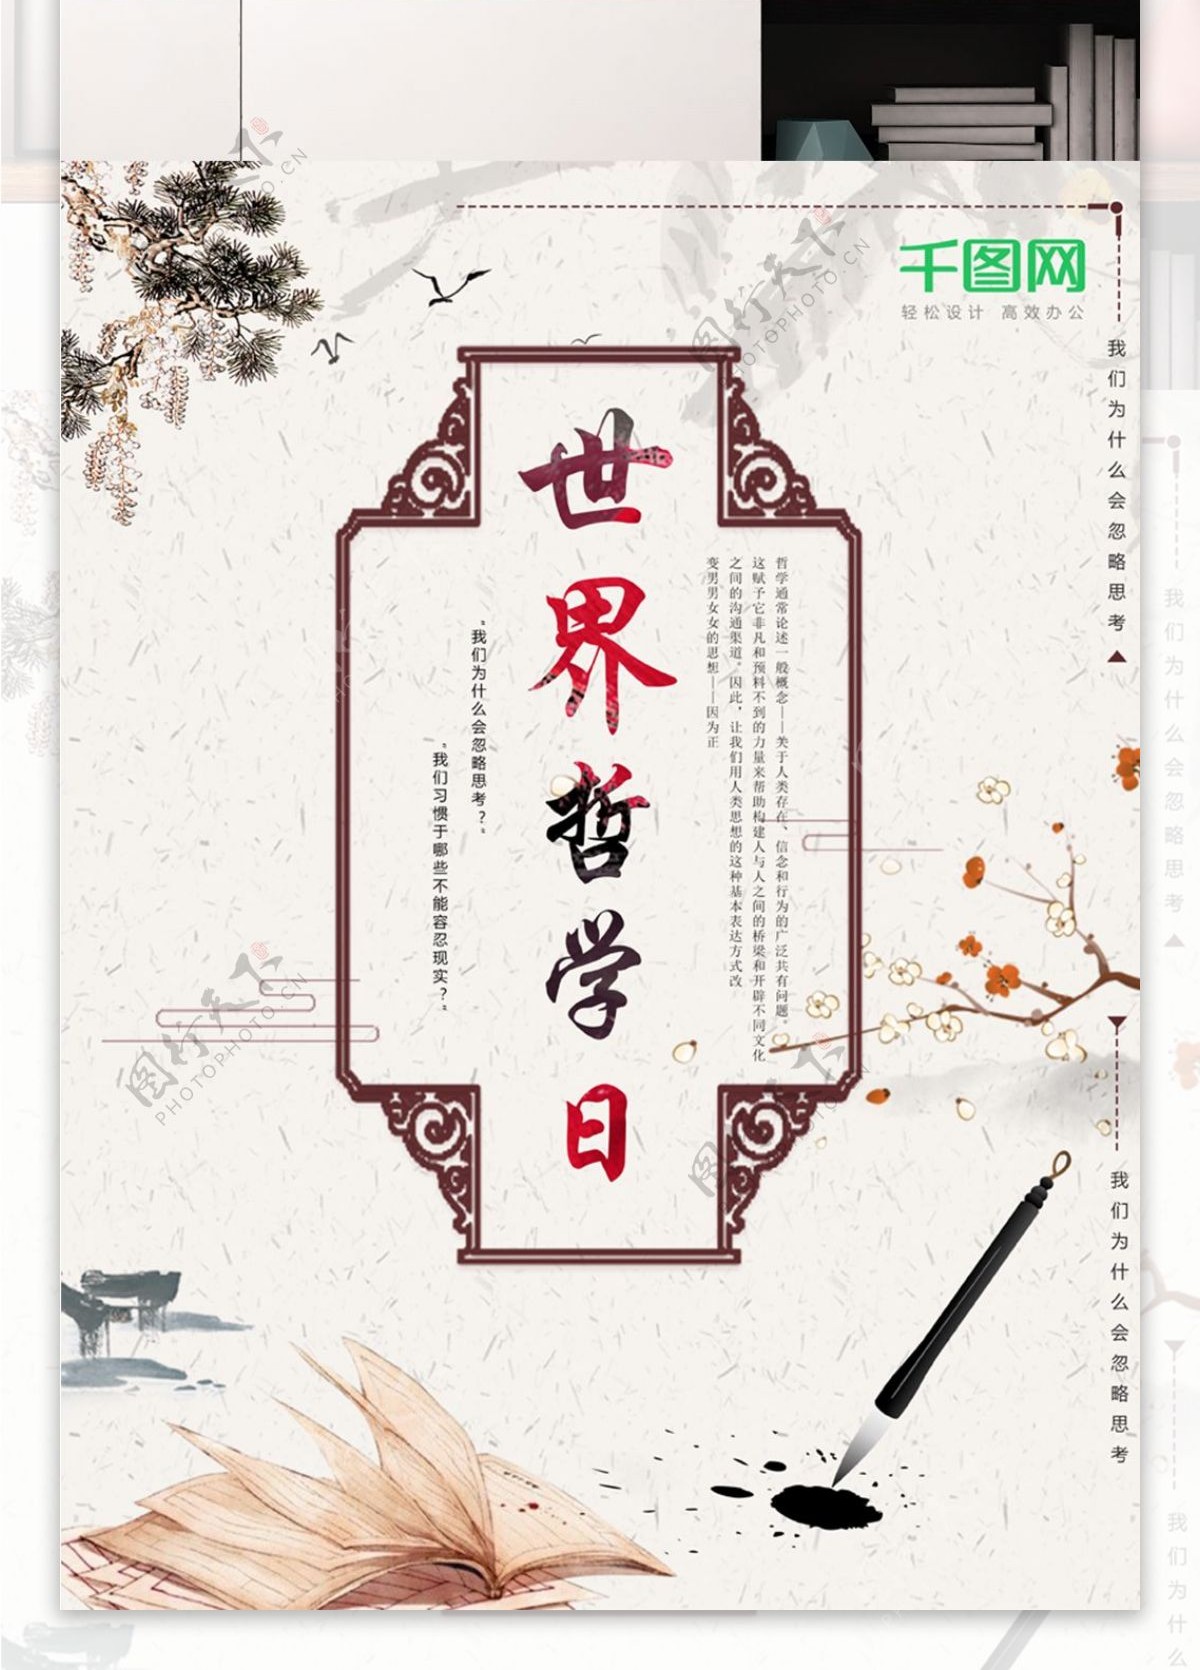 简约中国风世界哲学日海报